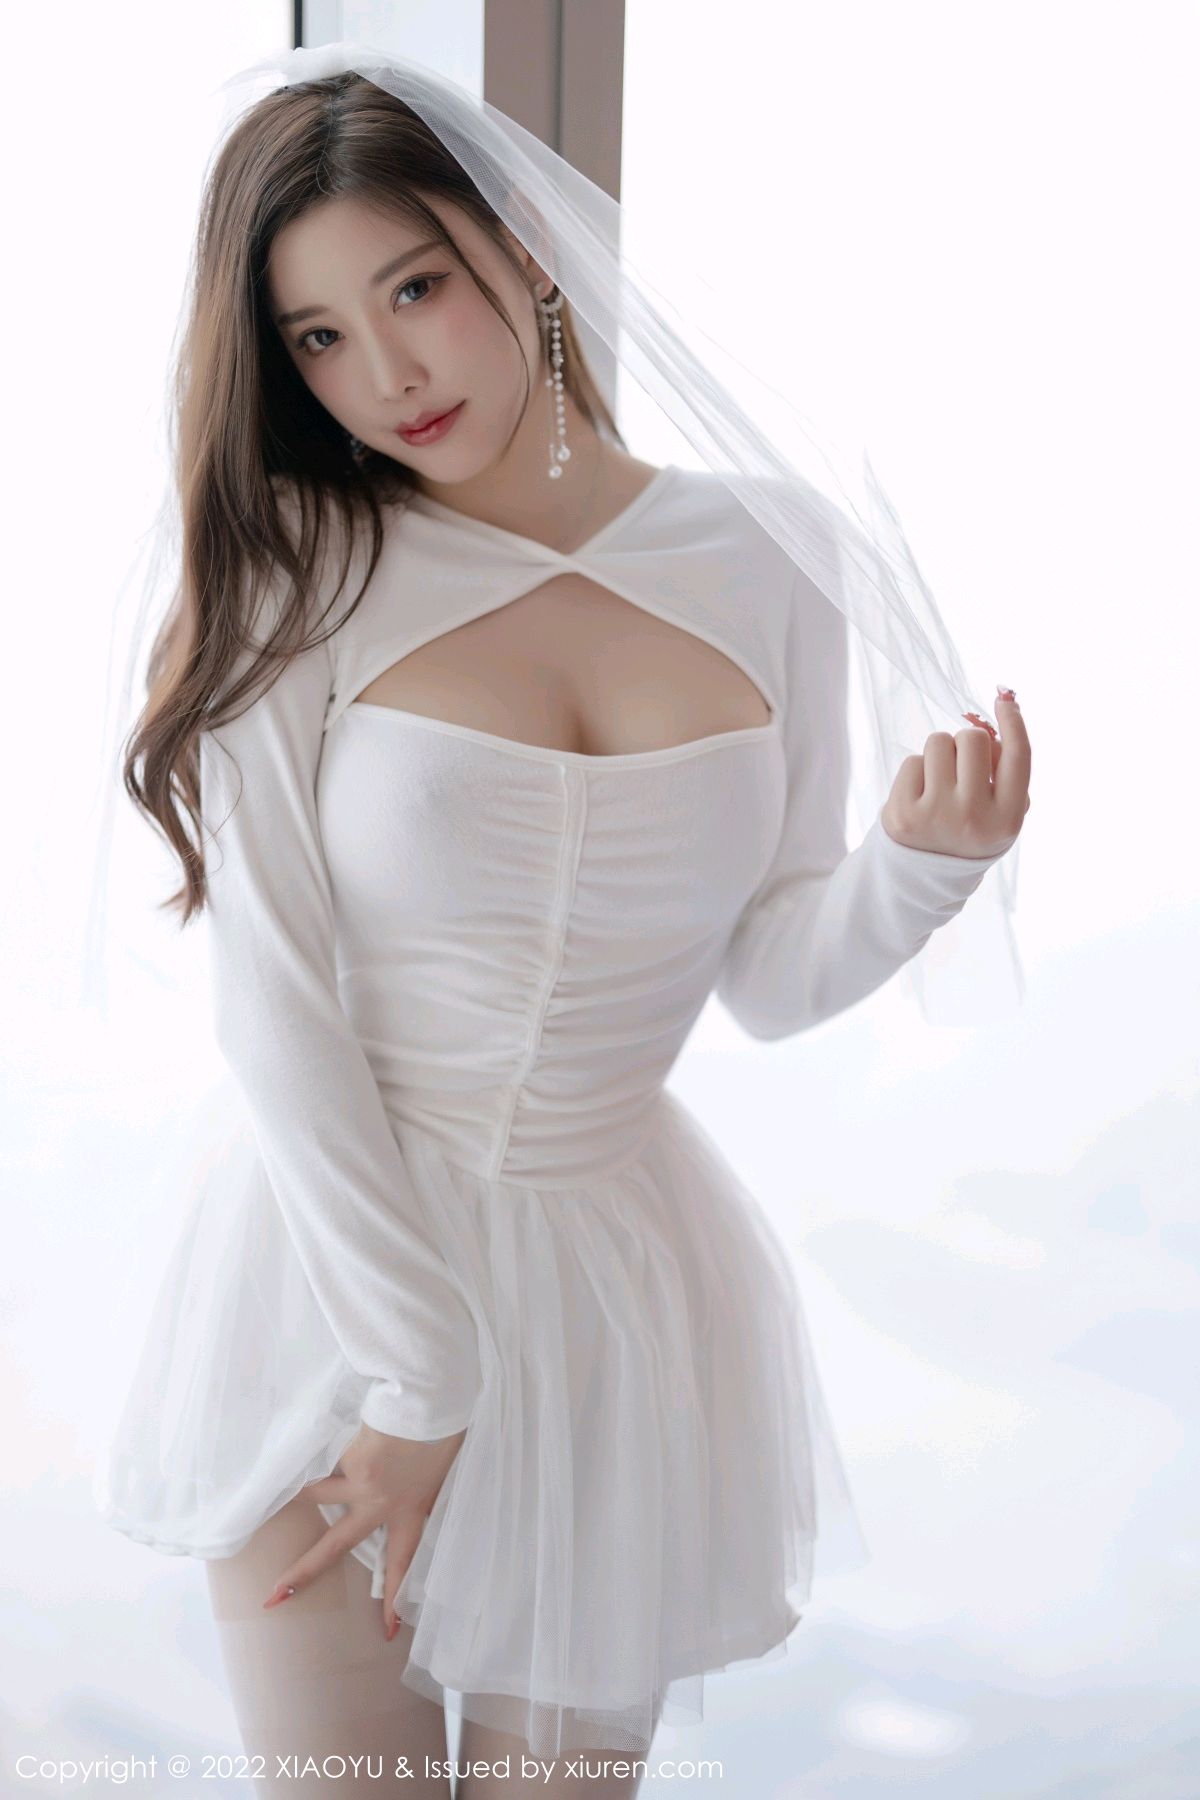 [XIAOYU语画界]-Vol.739-杨晨晨Yome-白色婚纱服饰搭配白色丝袜-套图之家